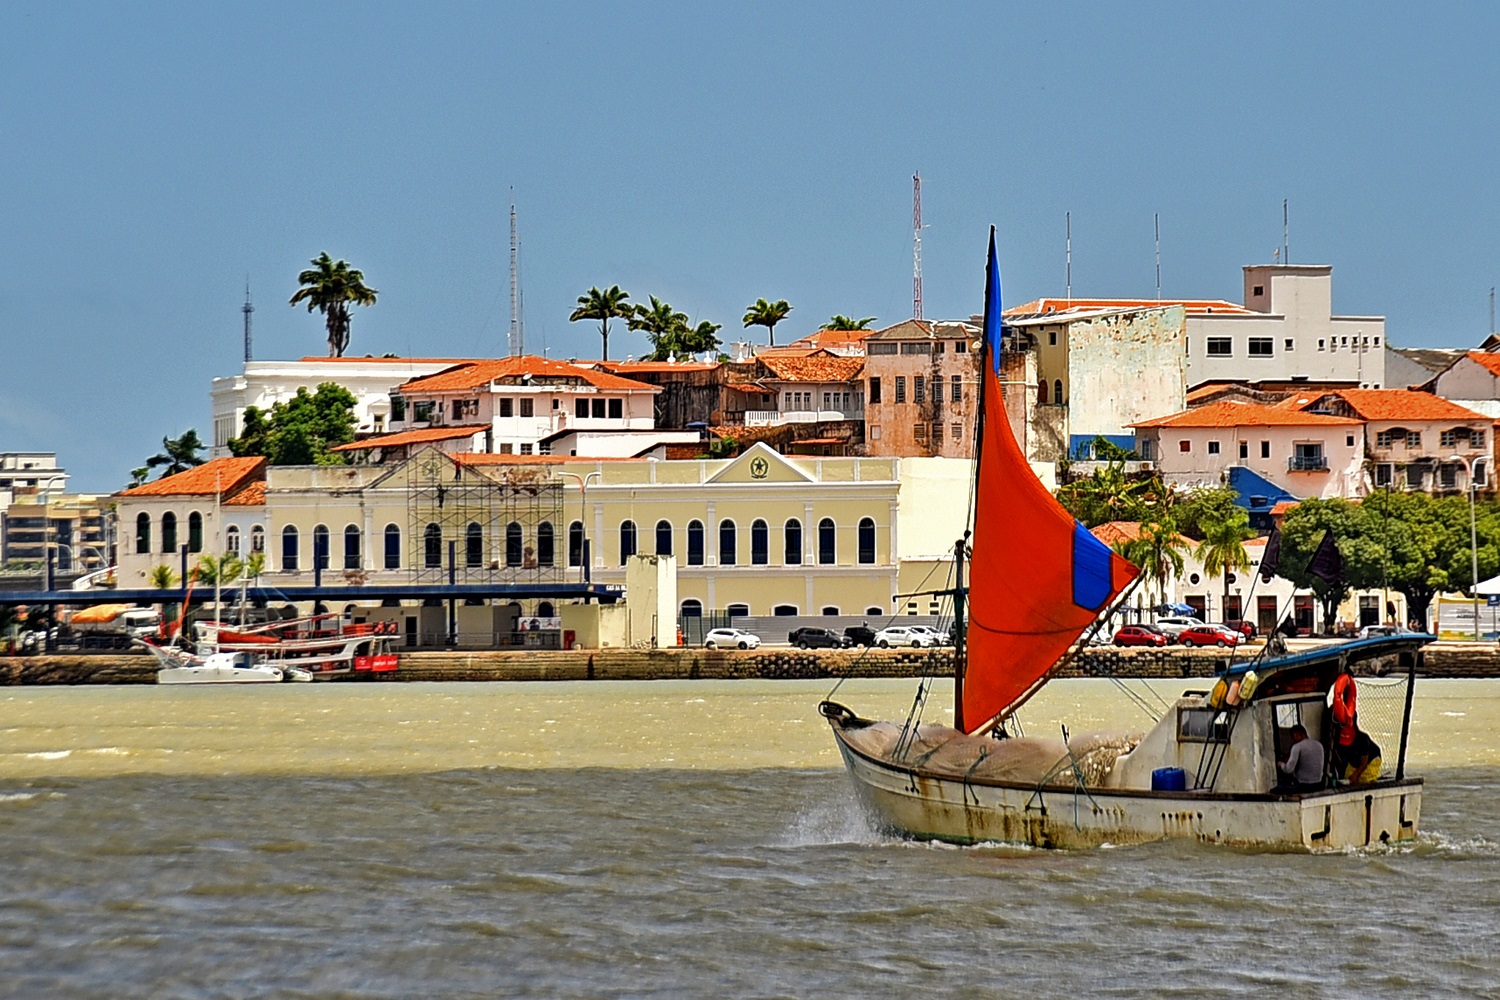 São Luís das tradicionais embarcações que navegam no avistar dos seus casarões históricos – Foto: Mauricio Alexandre 